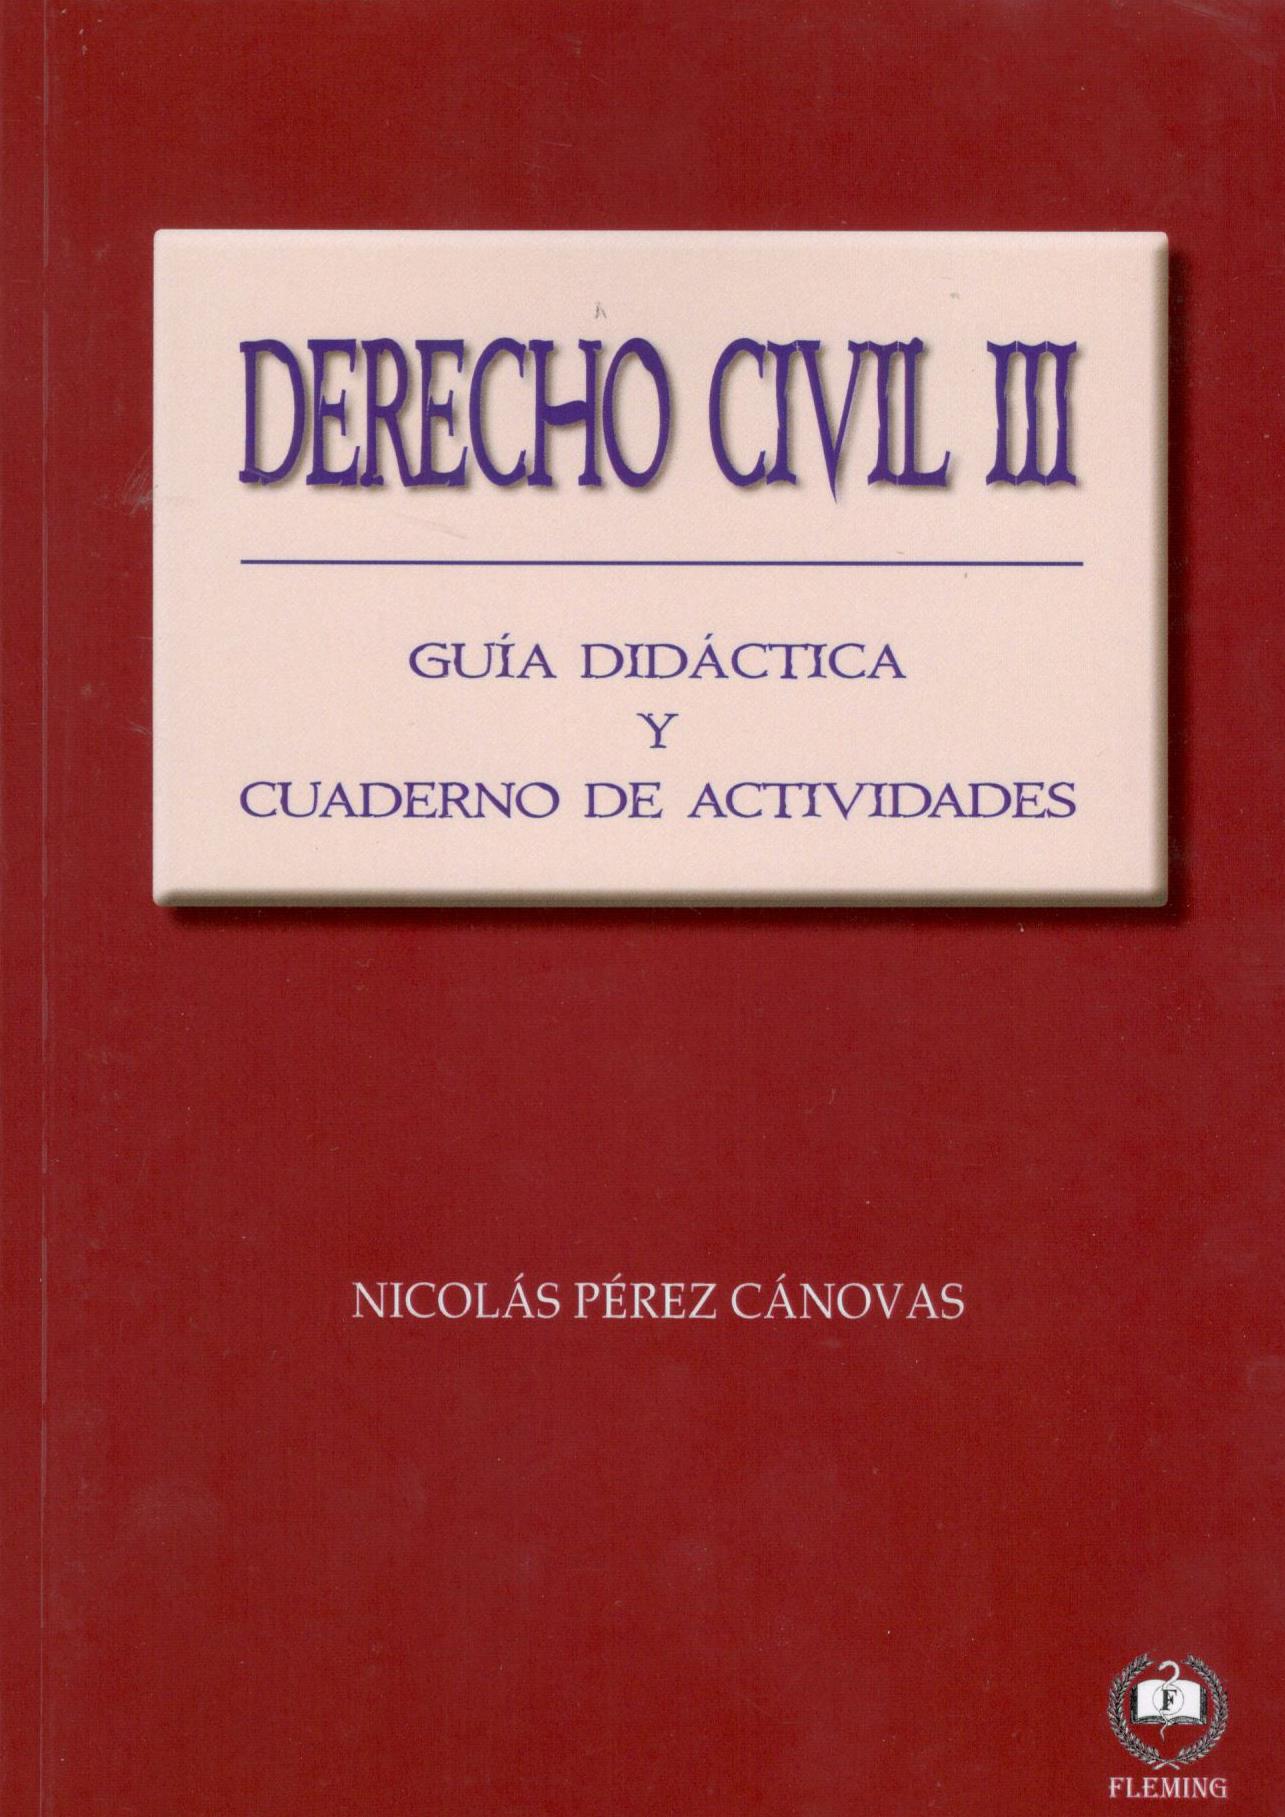 DERECHO CIVIL III. Guia didactica y cuaderno de actividades